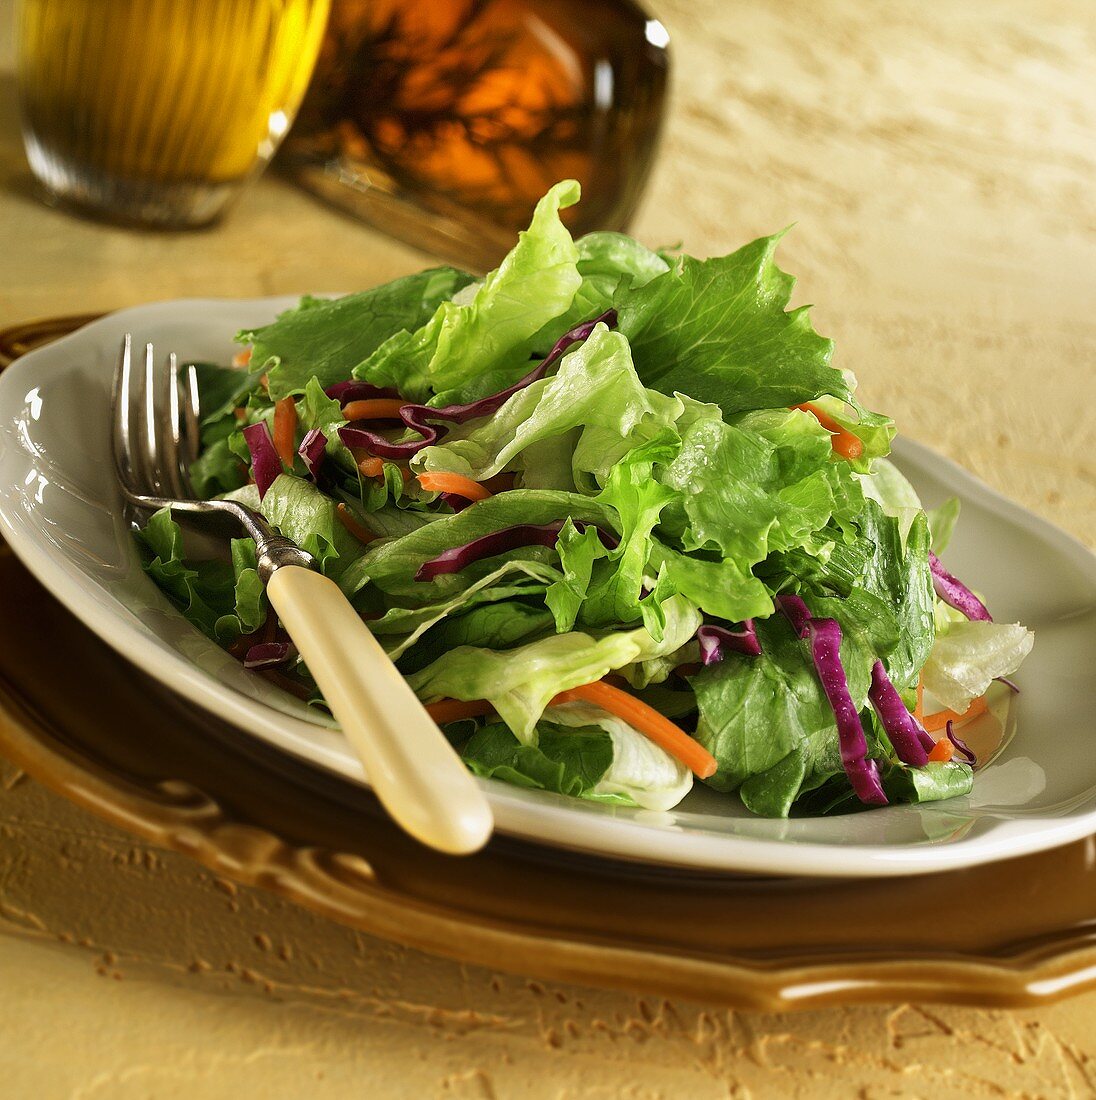 Blattsalat mit Möhren- und Rotkohlstreifen